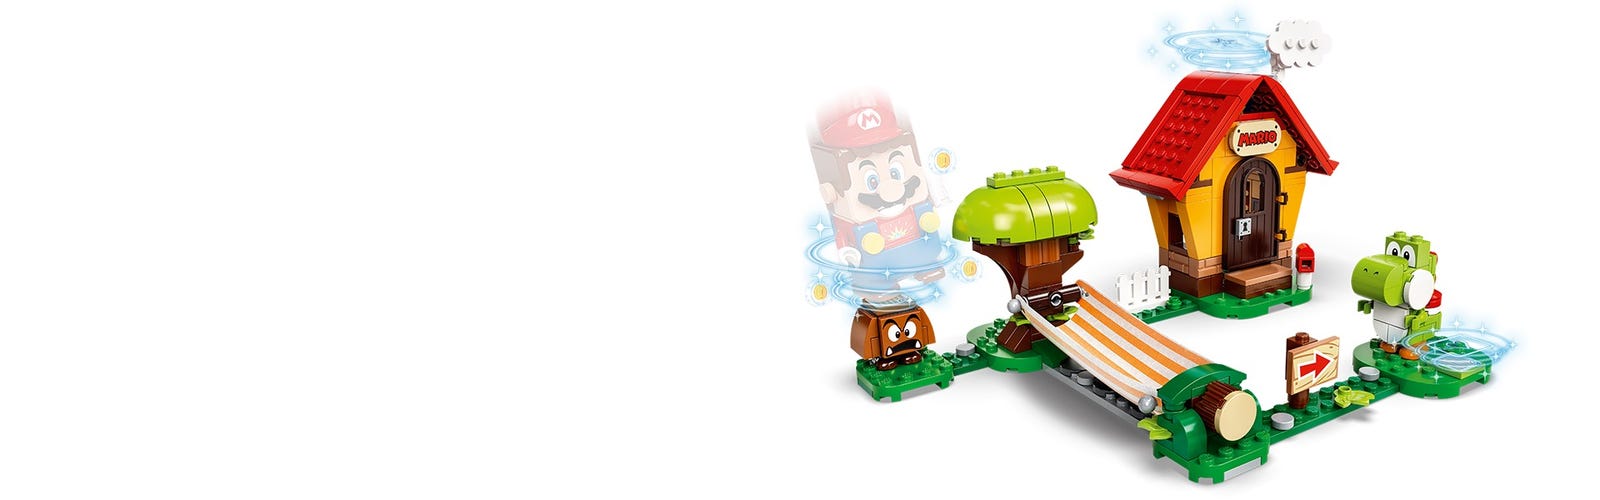 Lego Super Mario Bros: Casa de Mario y Yoshi